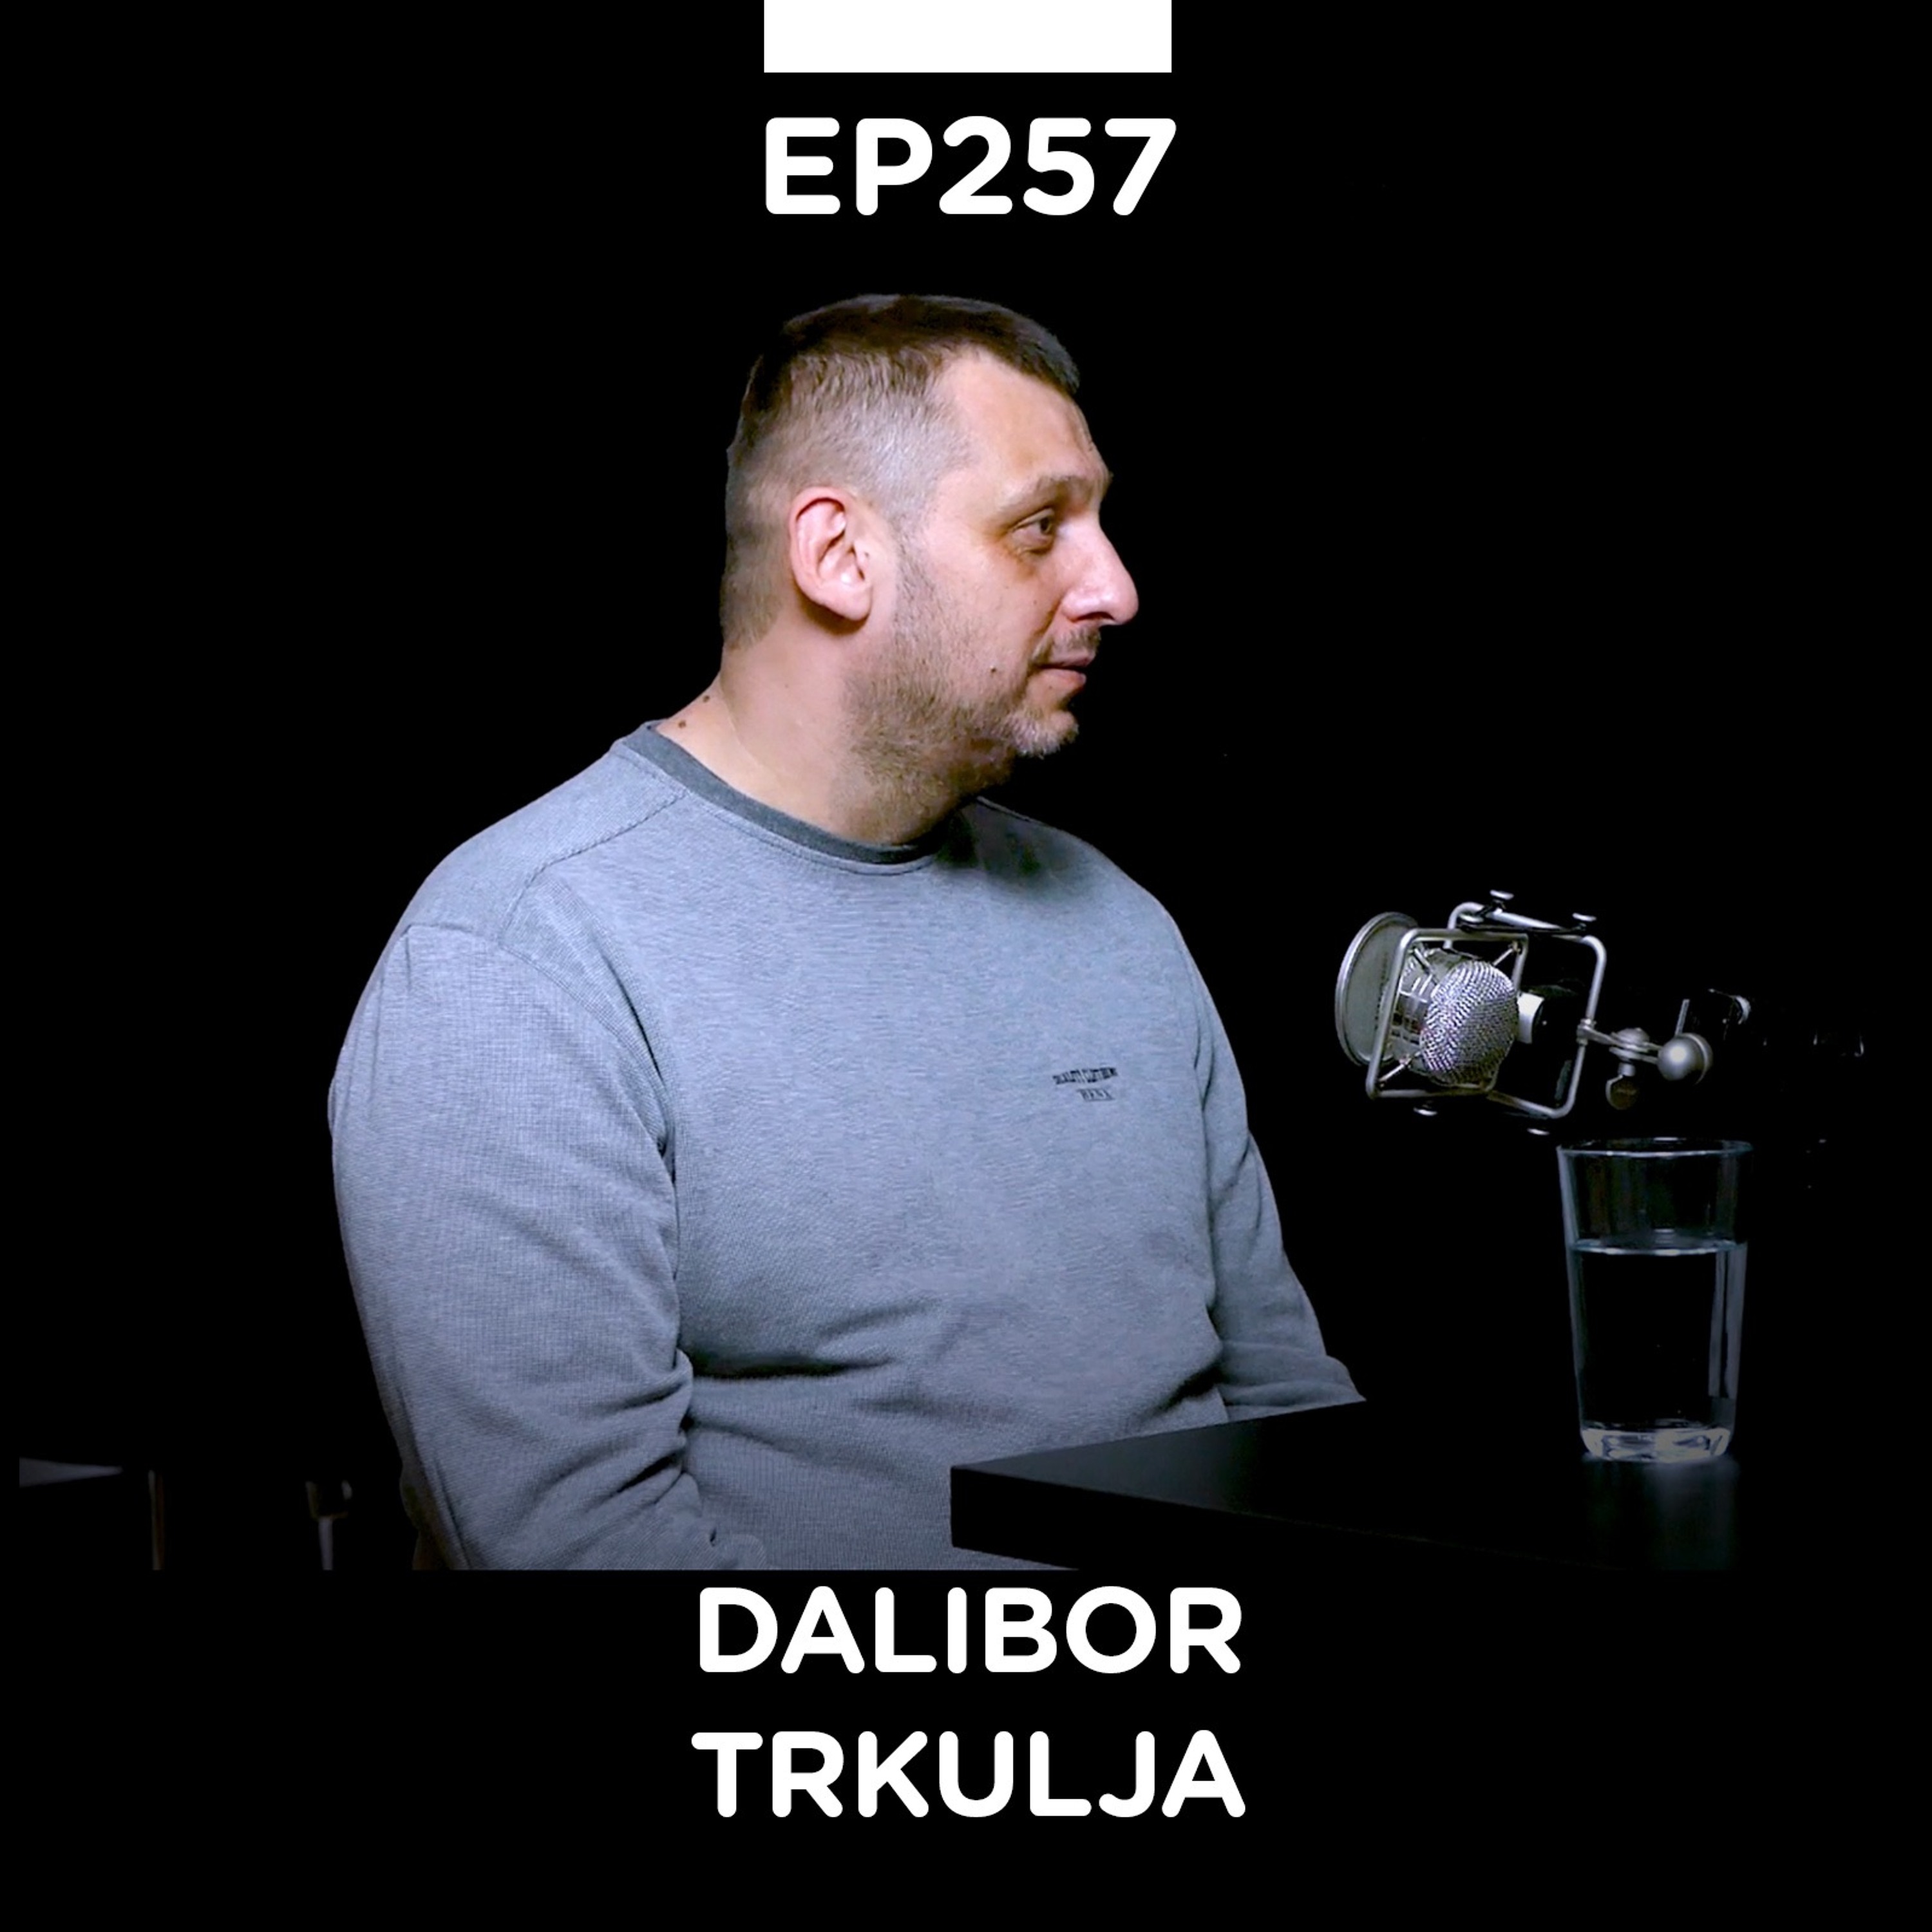 EP 257: Dalibor Trkulja, kovačka radionica Dalibor Trkulja - Pojačalo podcast